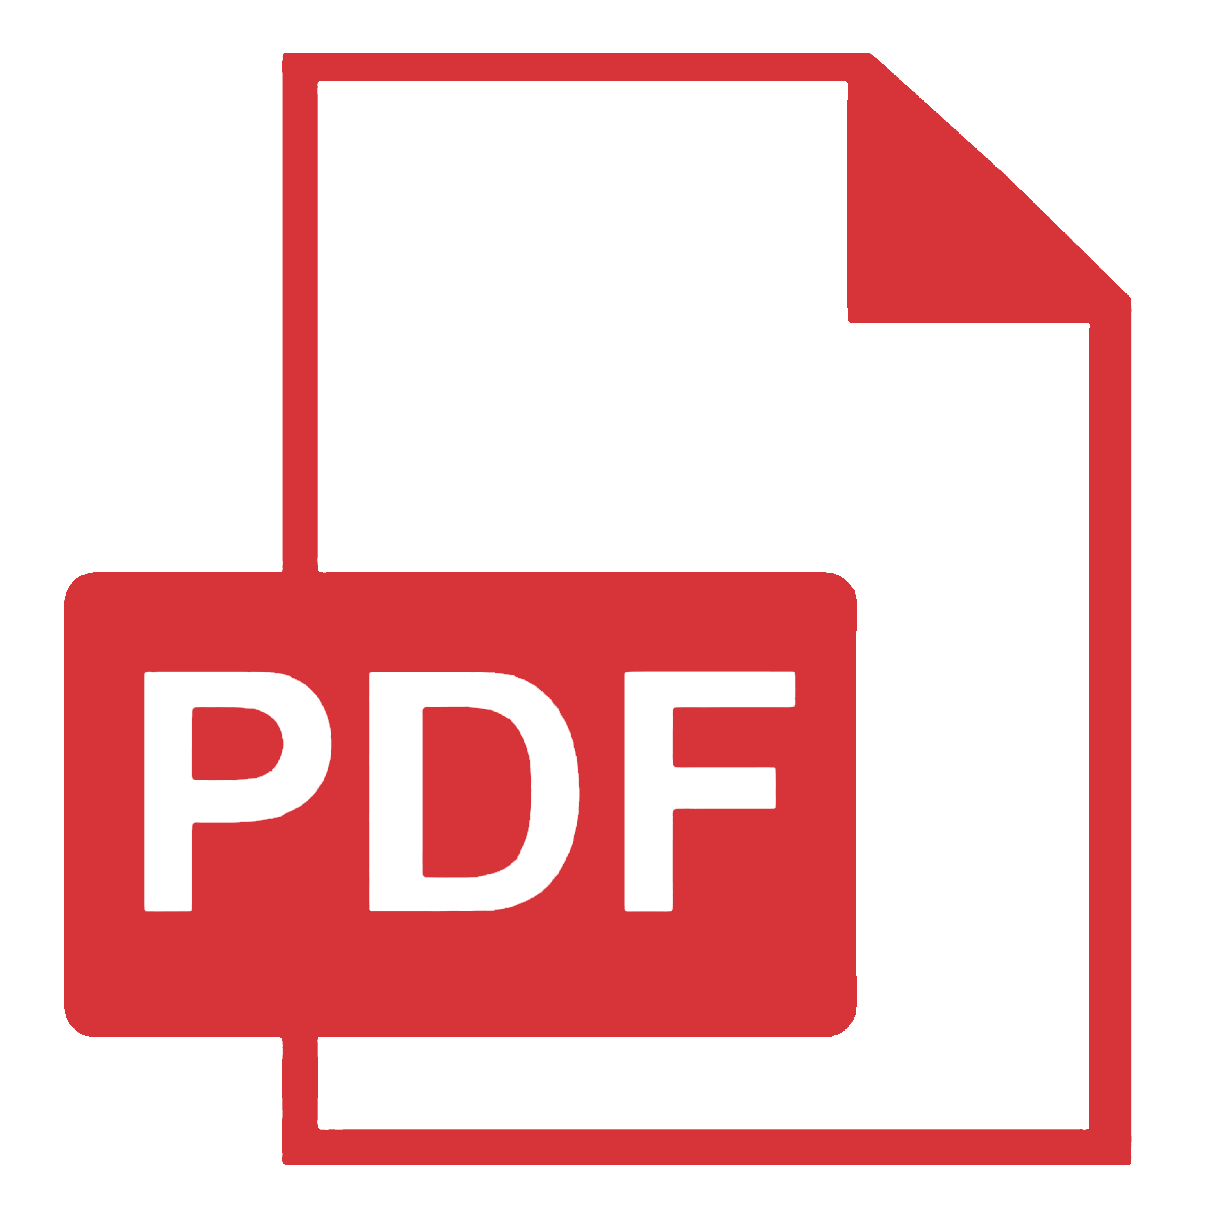 Pdf icon. Значок pdf. Пдф файл. Иконка pdf файла. Ярлык pdf.